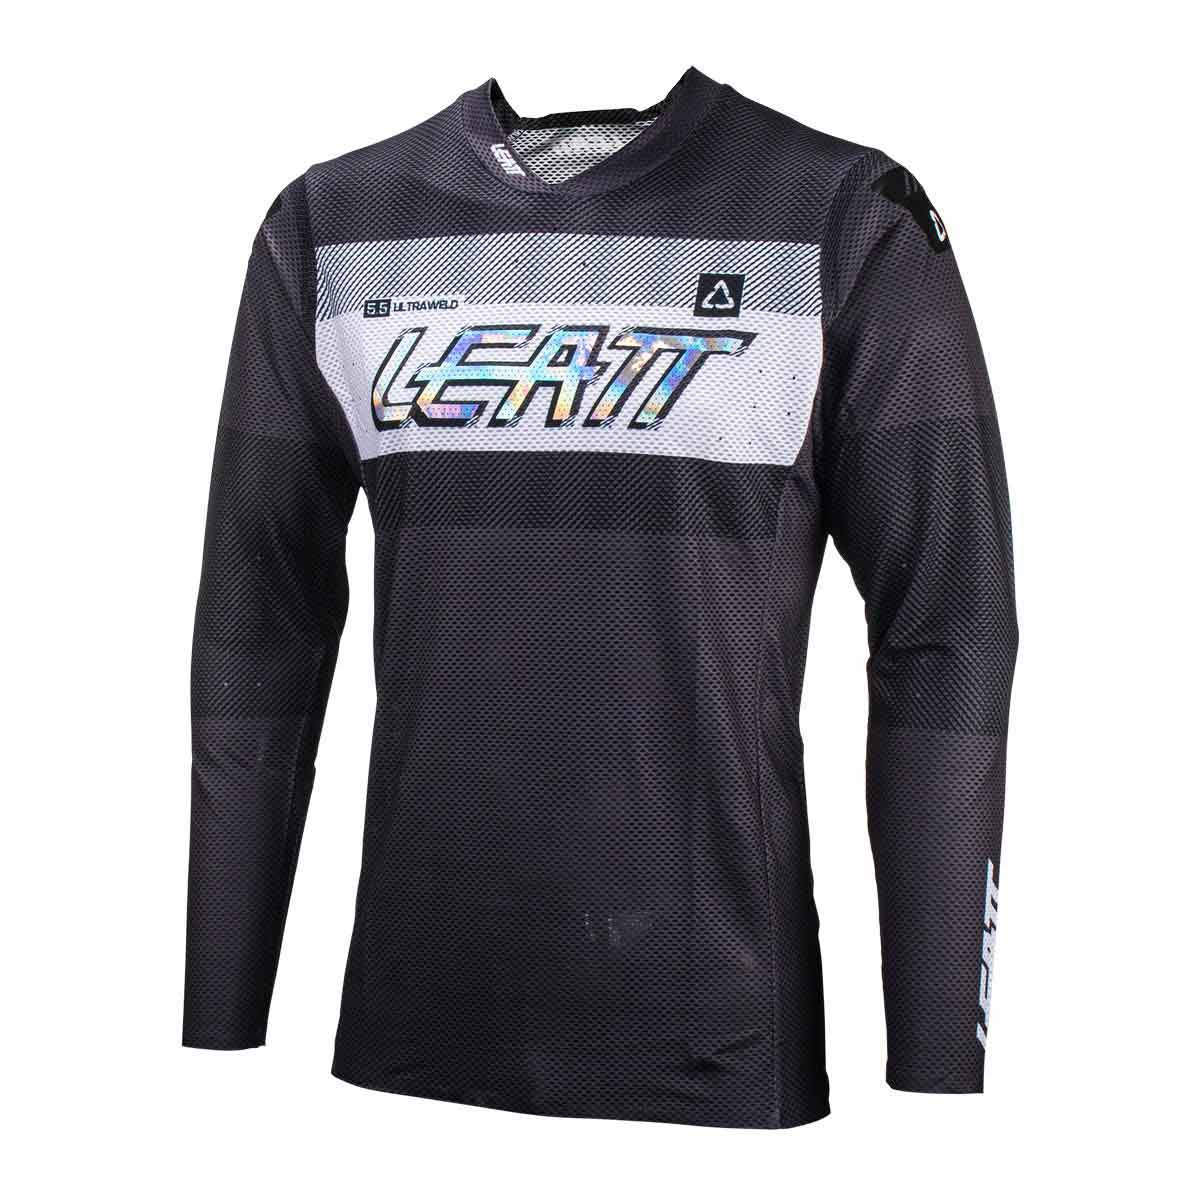 LEATT Motocross Jersey 5.5 UltraWeld, graphite